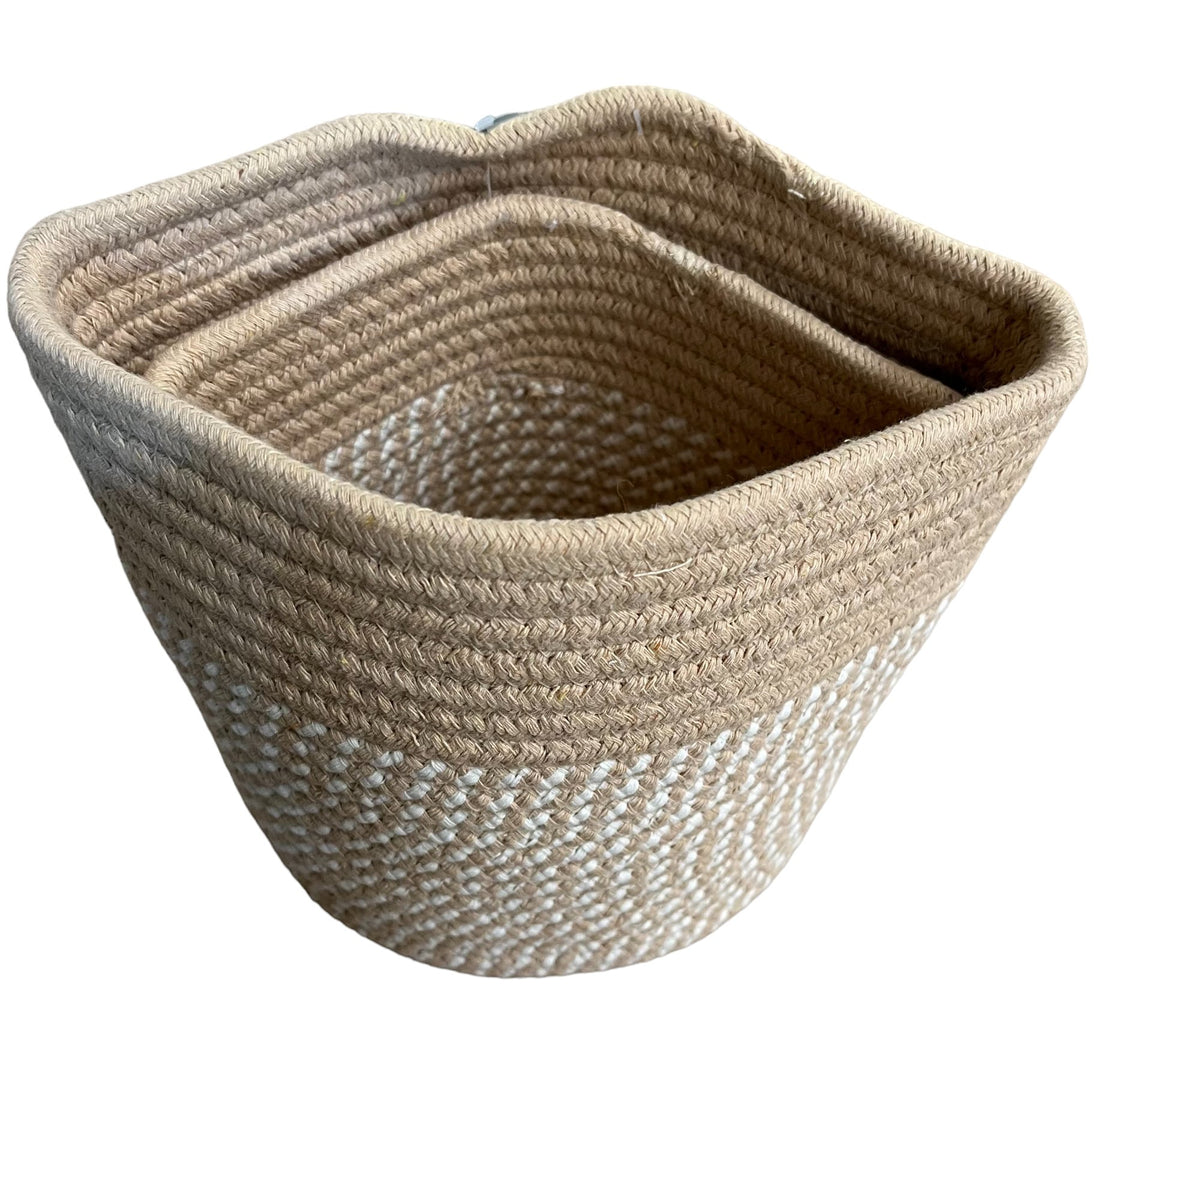 Cotton Rope Round Storage Baskets Set of 2 - Cherish Home